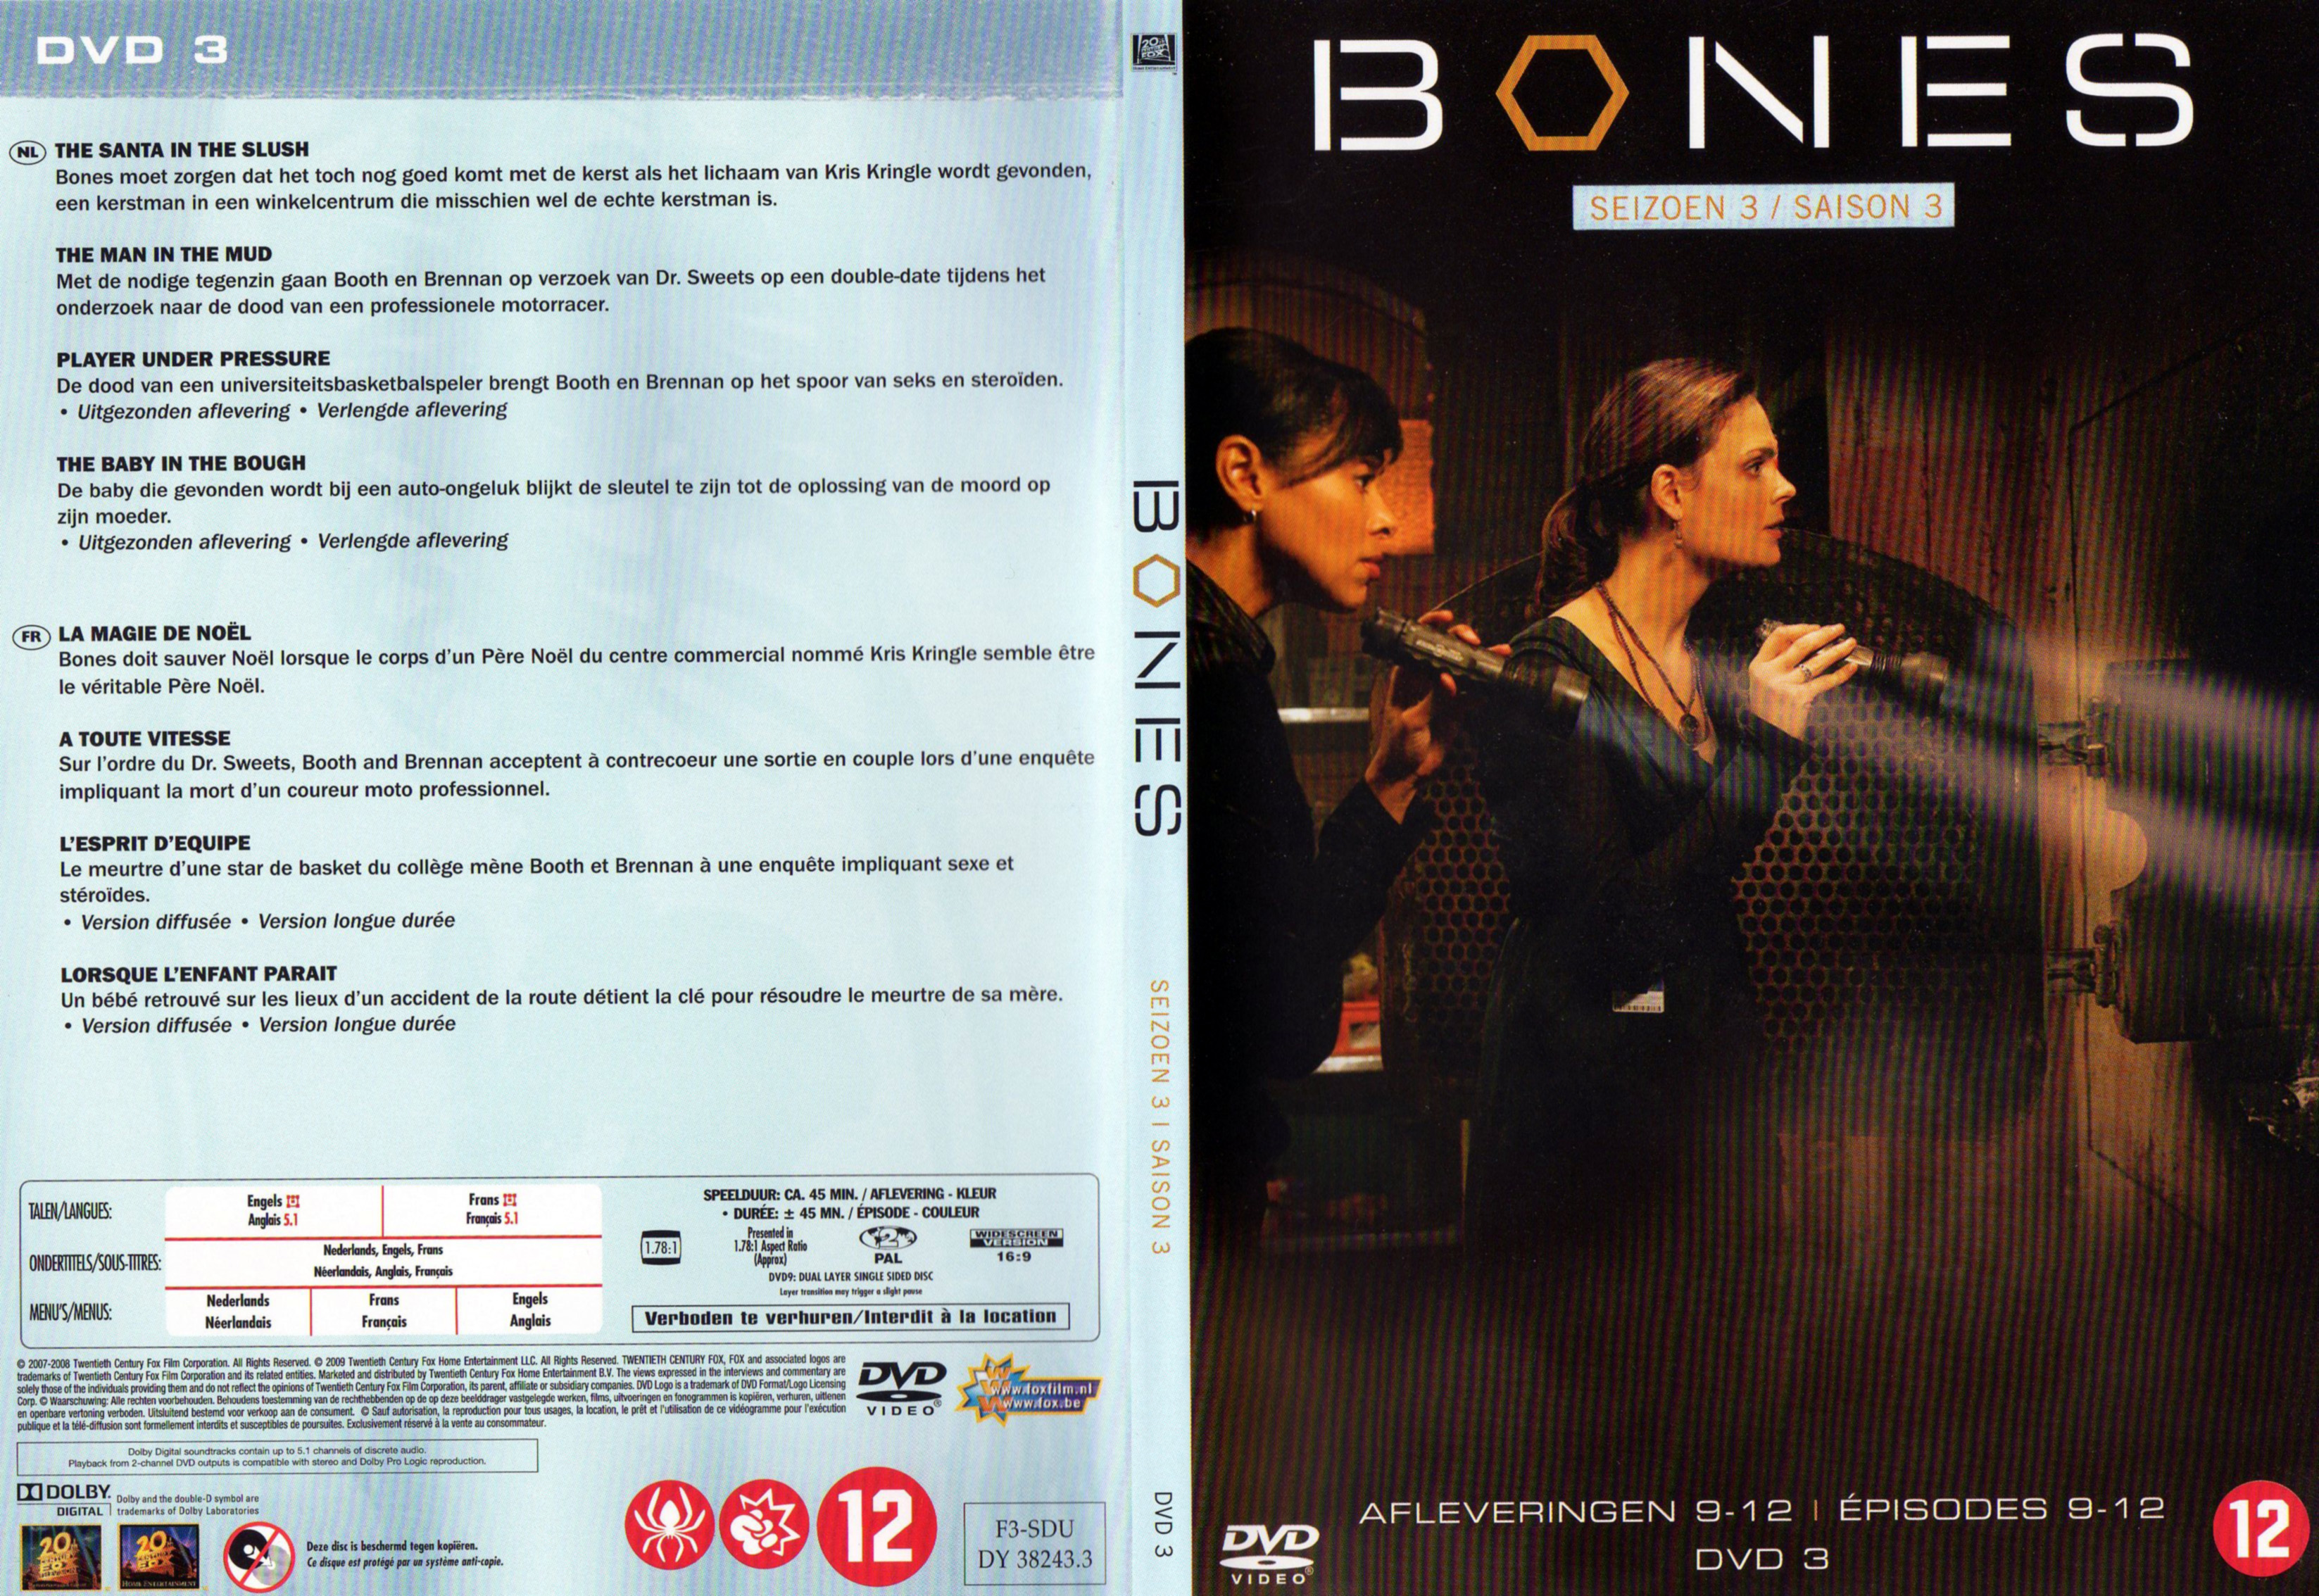 Jaquette DVD Bones Saison 3 DVD 3 v2